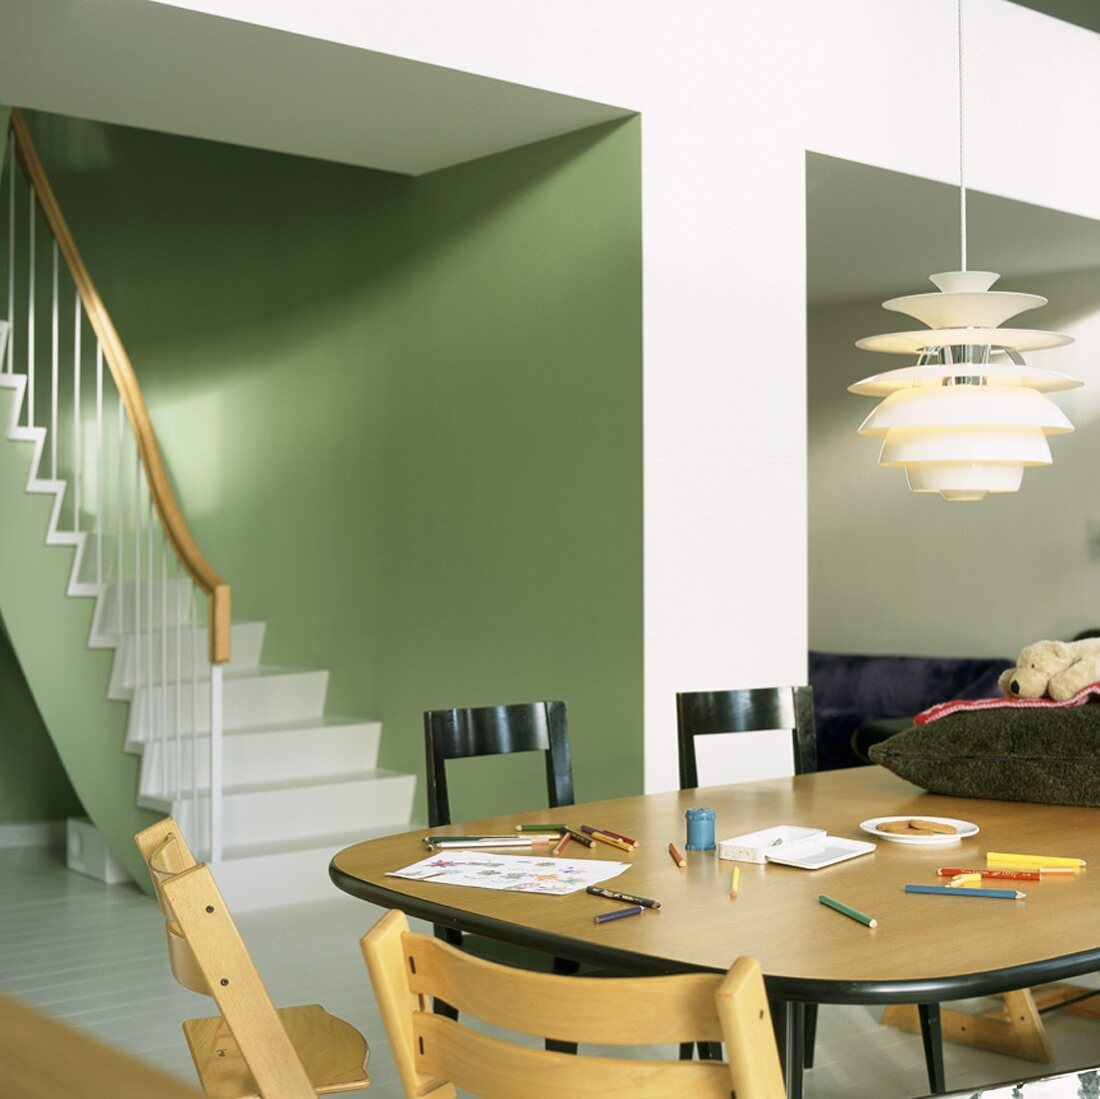 Kinderstühle und ein Vintagetisch mit Buntstiften in einem grünen Wohnraum